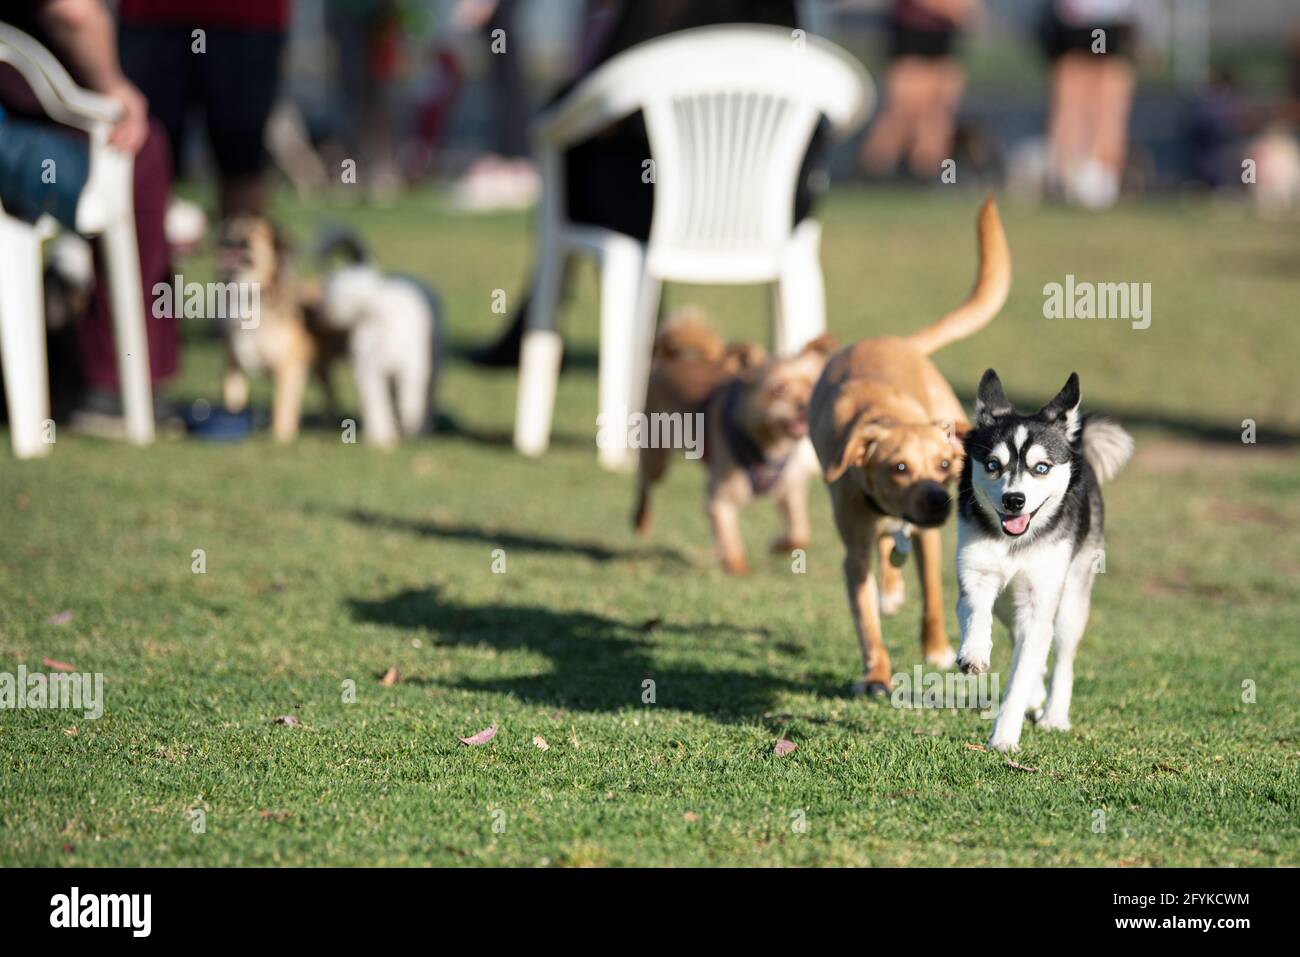 Une race de chien appelée Klee Kai, étant chassée par un autre chien dans un parc pour chiens. Banque D'Images